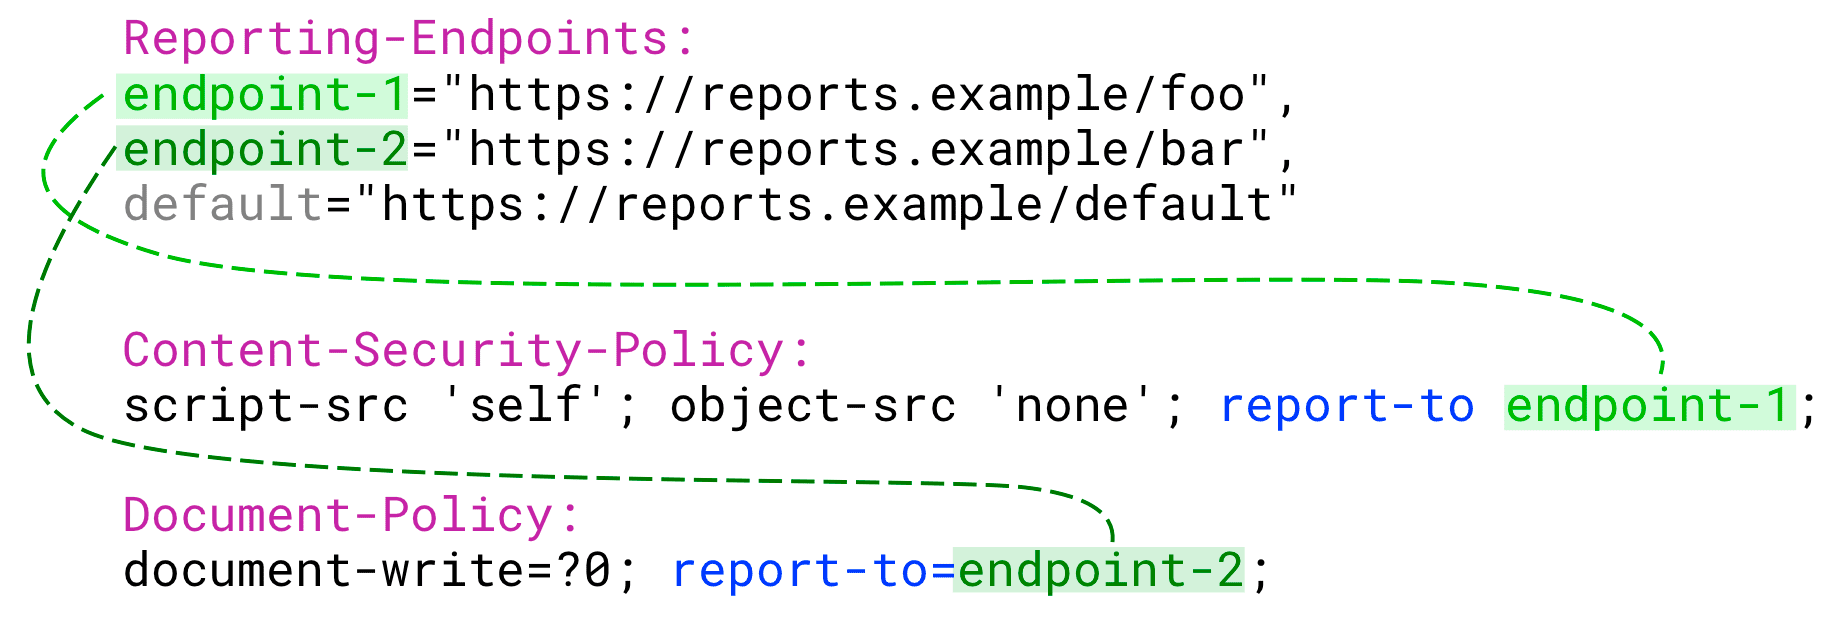 برای هر خط مشی، مقدار report-to باید یکی از نقاط پایانی نامگذاری شده باشد که پیکربندی کرده اید.